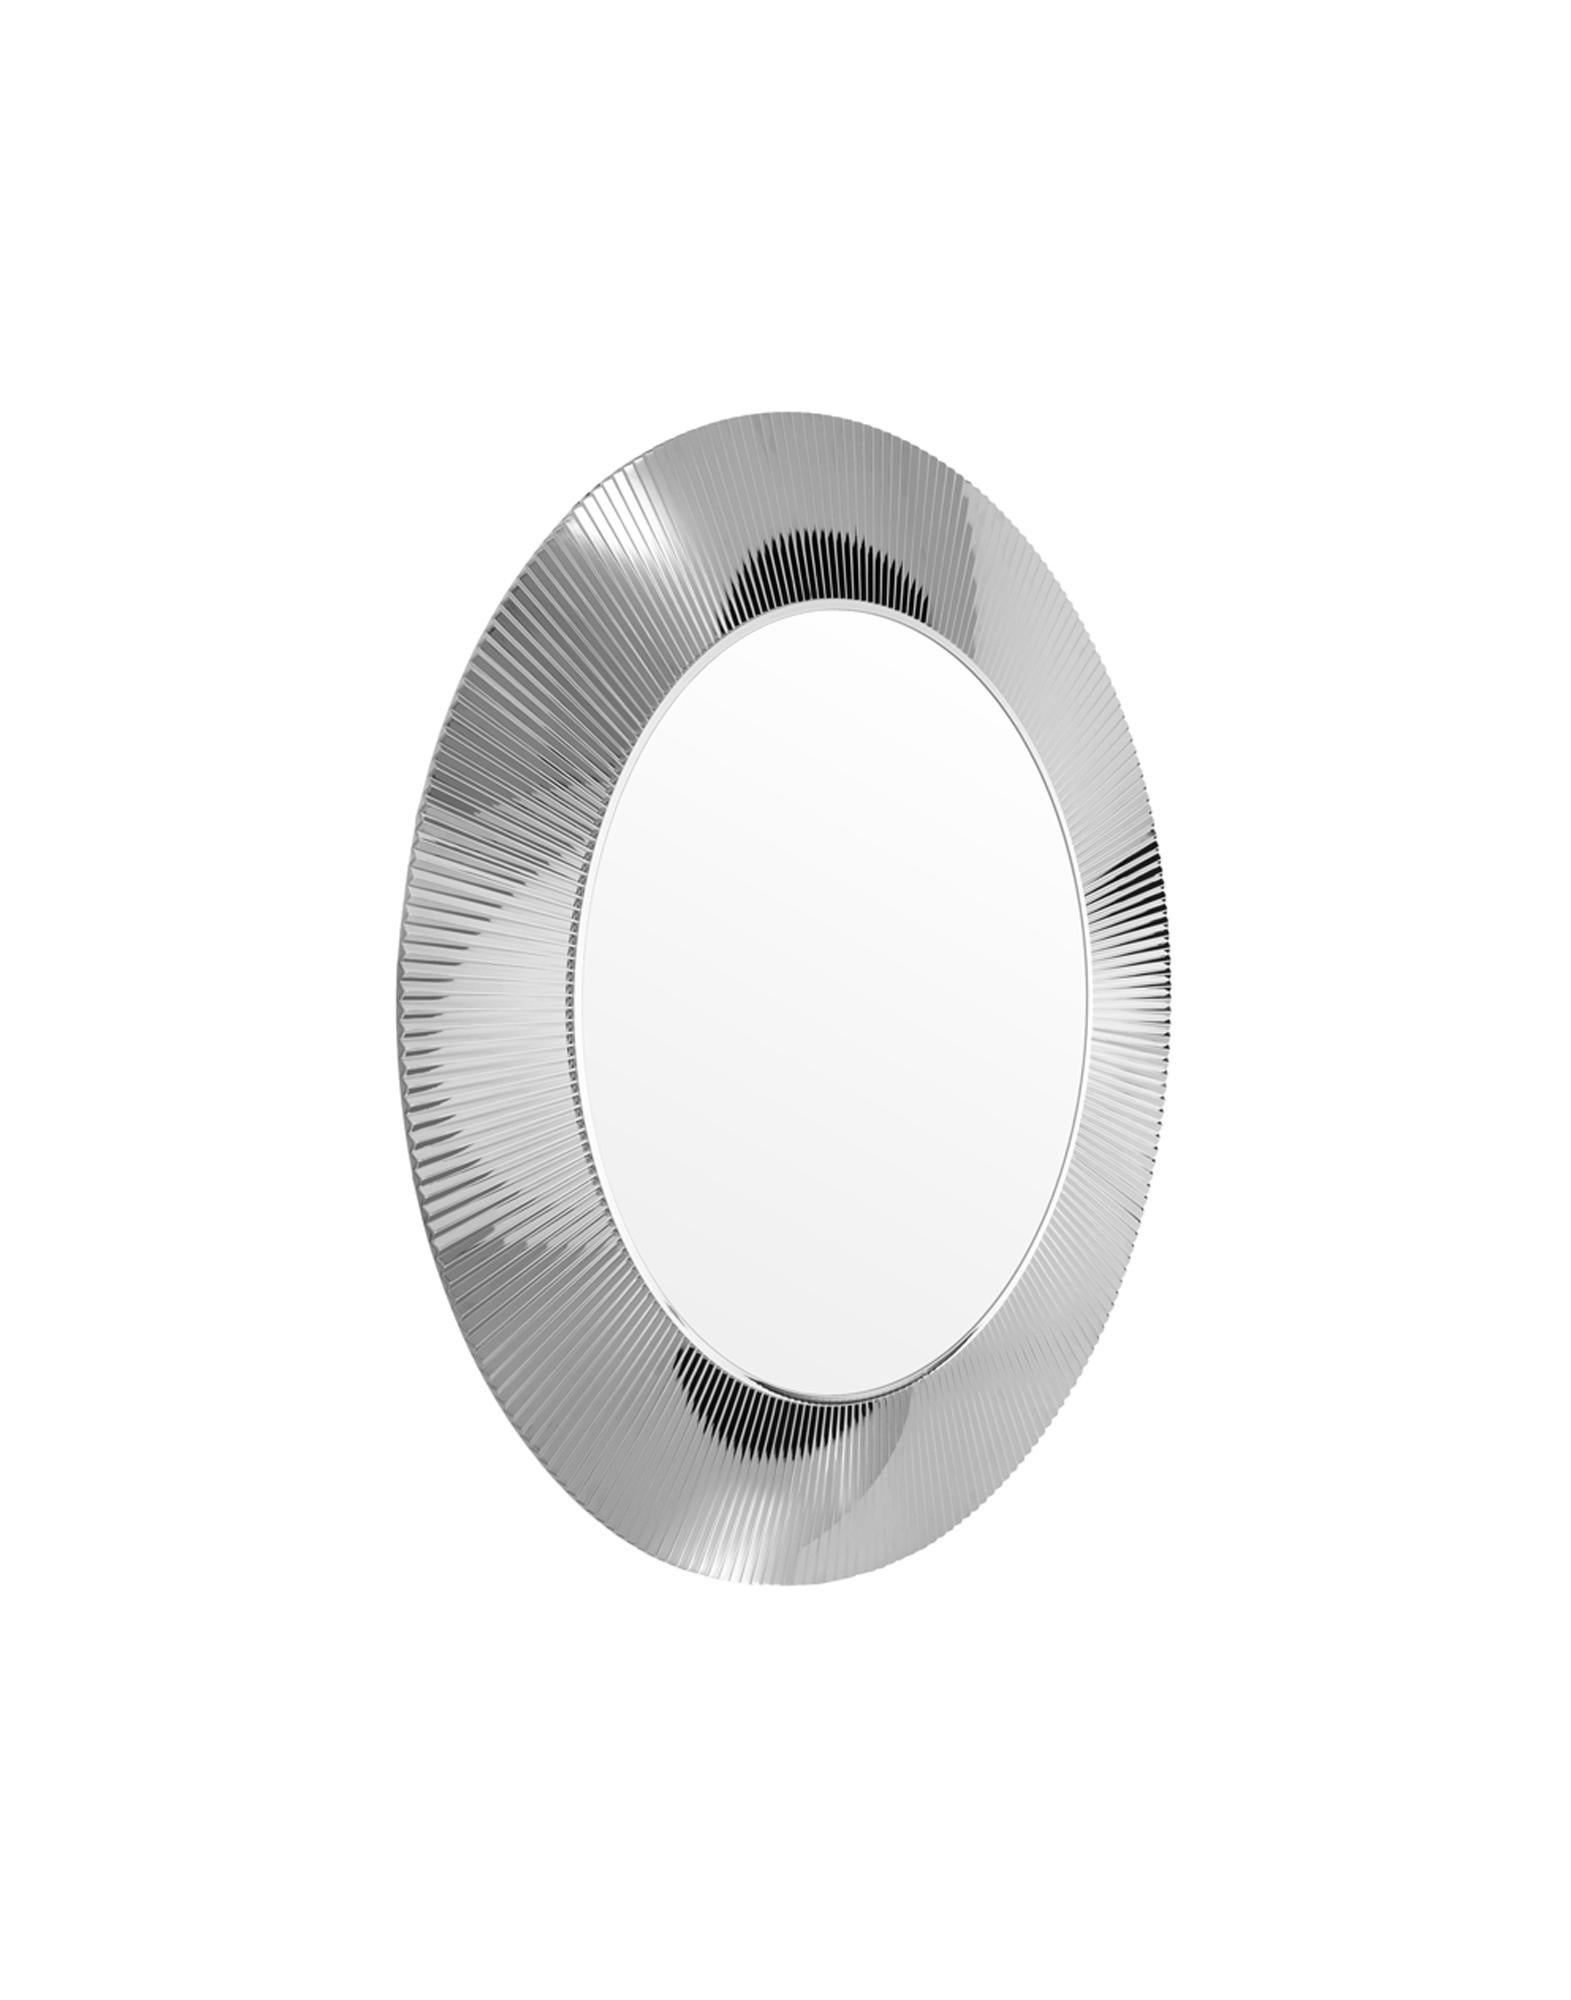 Miroir rond avec un cadre en PMMA transparent ou coloré, avec un effet plissé unique. La possibilité d'appliquer la transparence même sur l'or et le chrome fait de ce miroir une pièce de design extrêmement polyvalente et transformatrice, adaptée aux